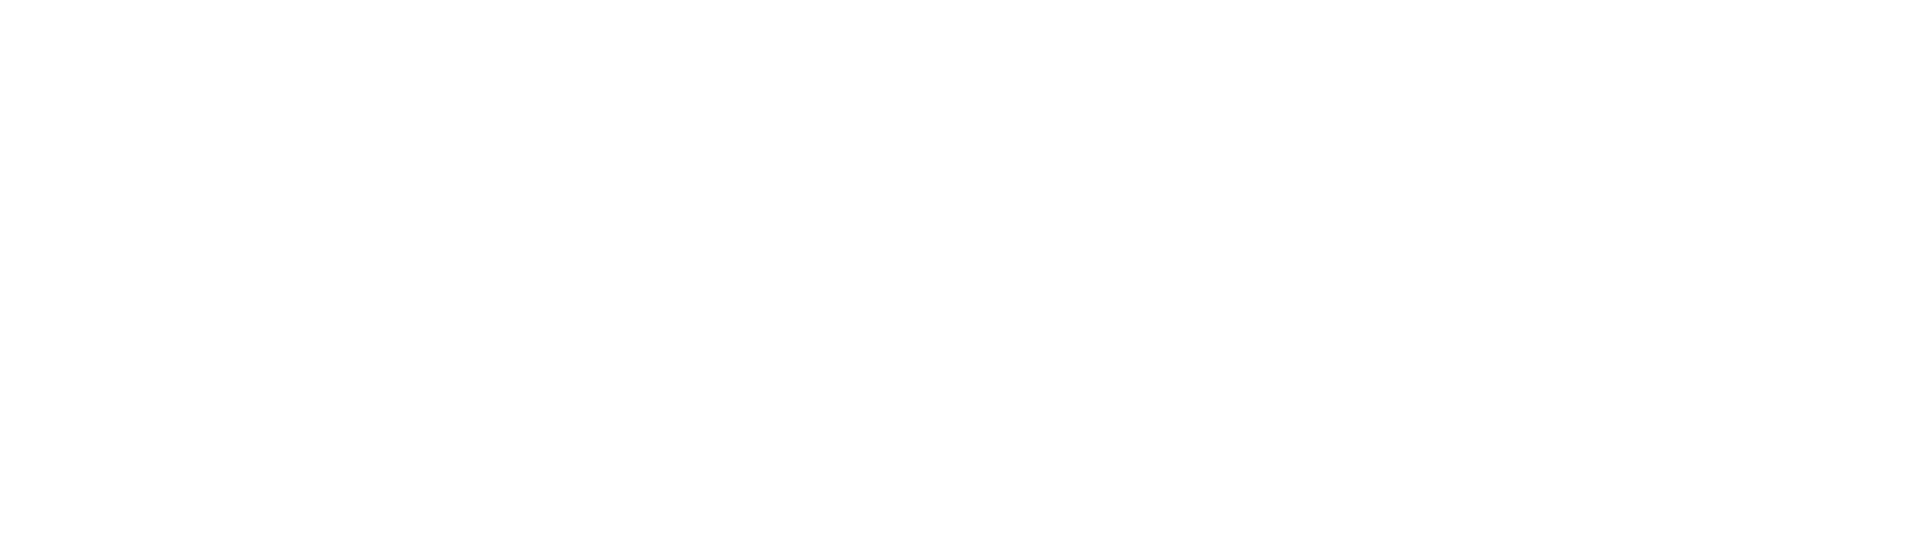 Western Washington University Give Day 04.25.24